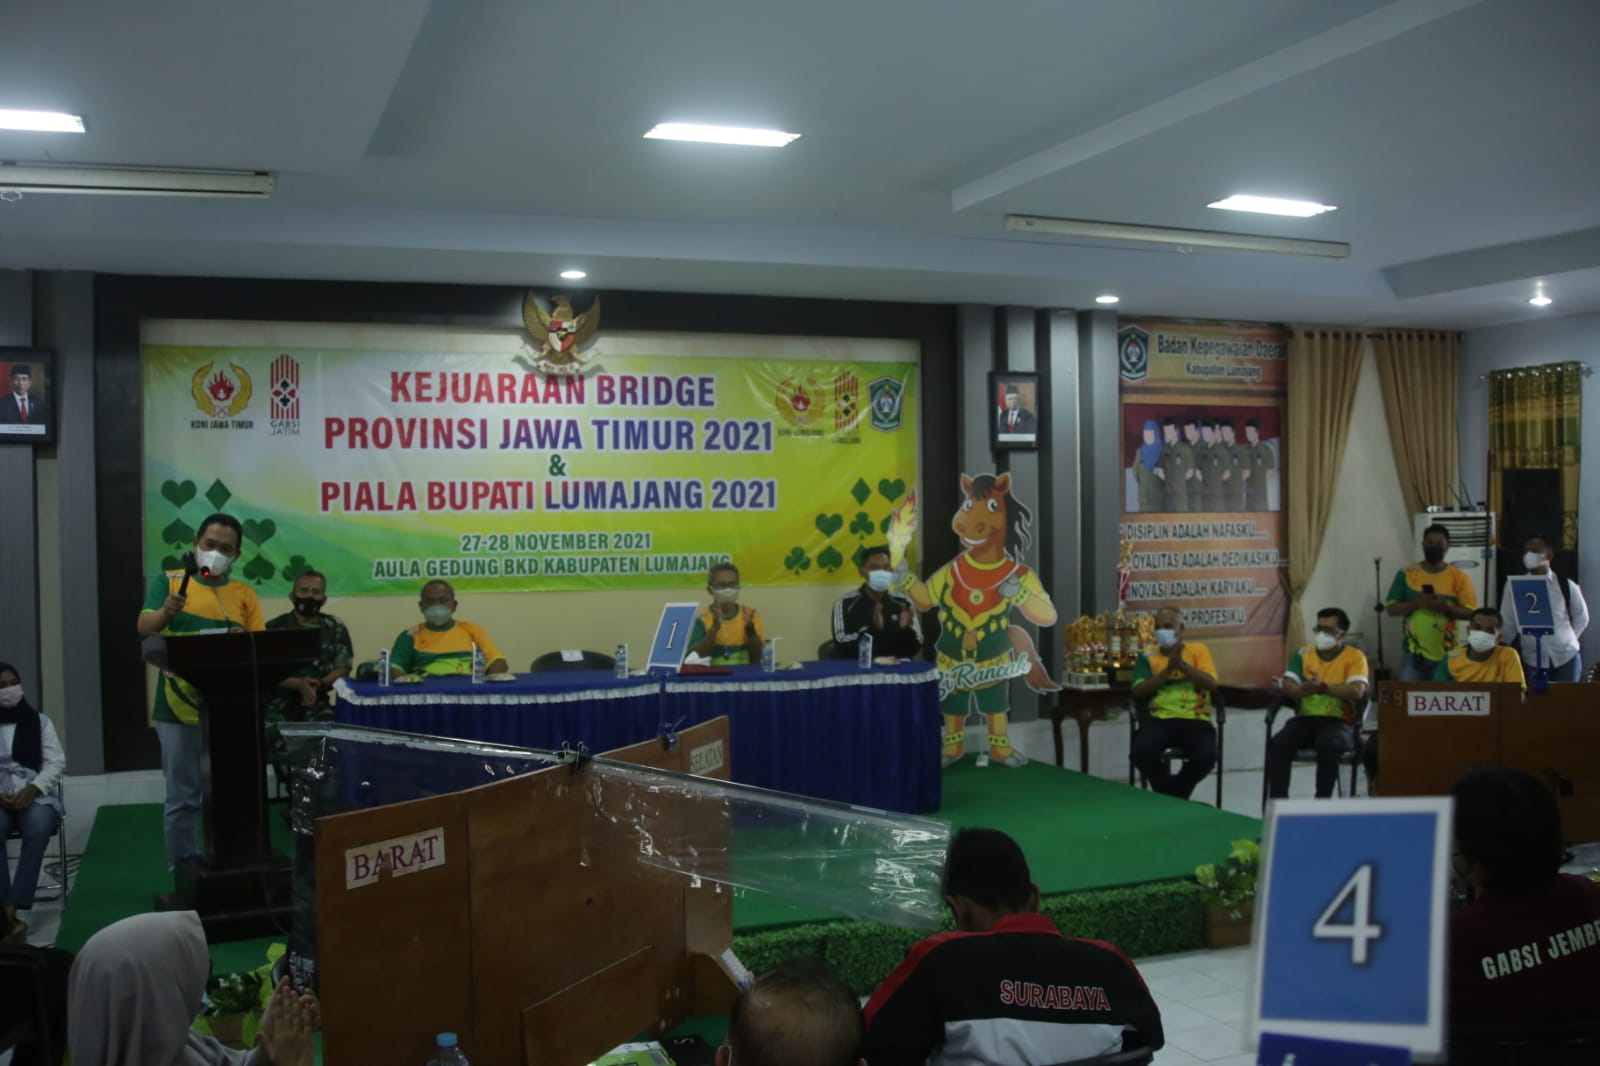 Bupati Lumajang, Thoriqul Haq membuka Kejuaraan Bridge Provinsi Jawa Timur 2021 dan Piala Bupati Lumajang 2021. (Foto: Istimewa)